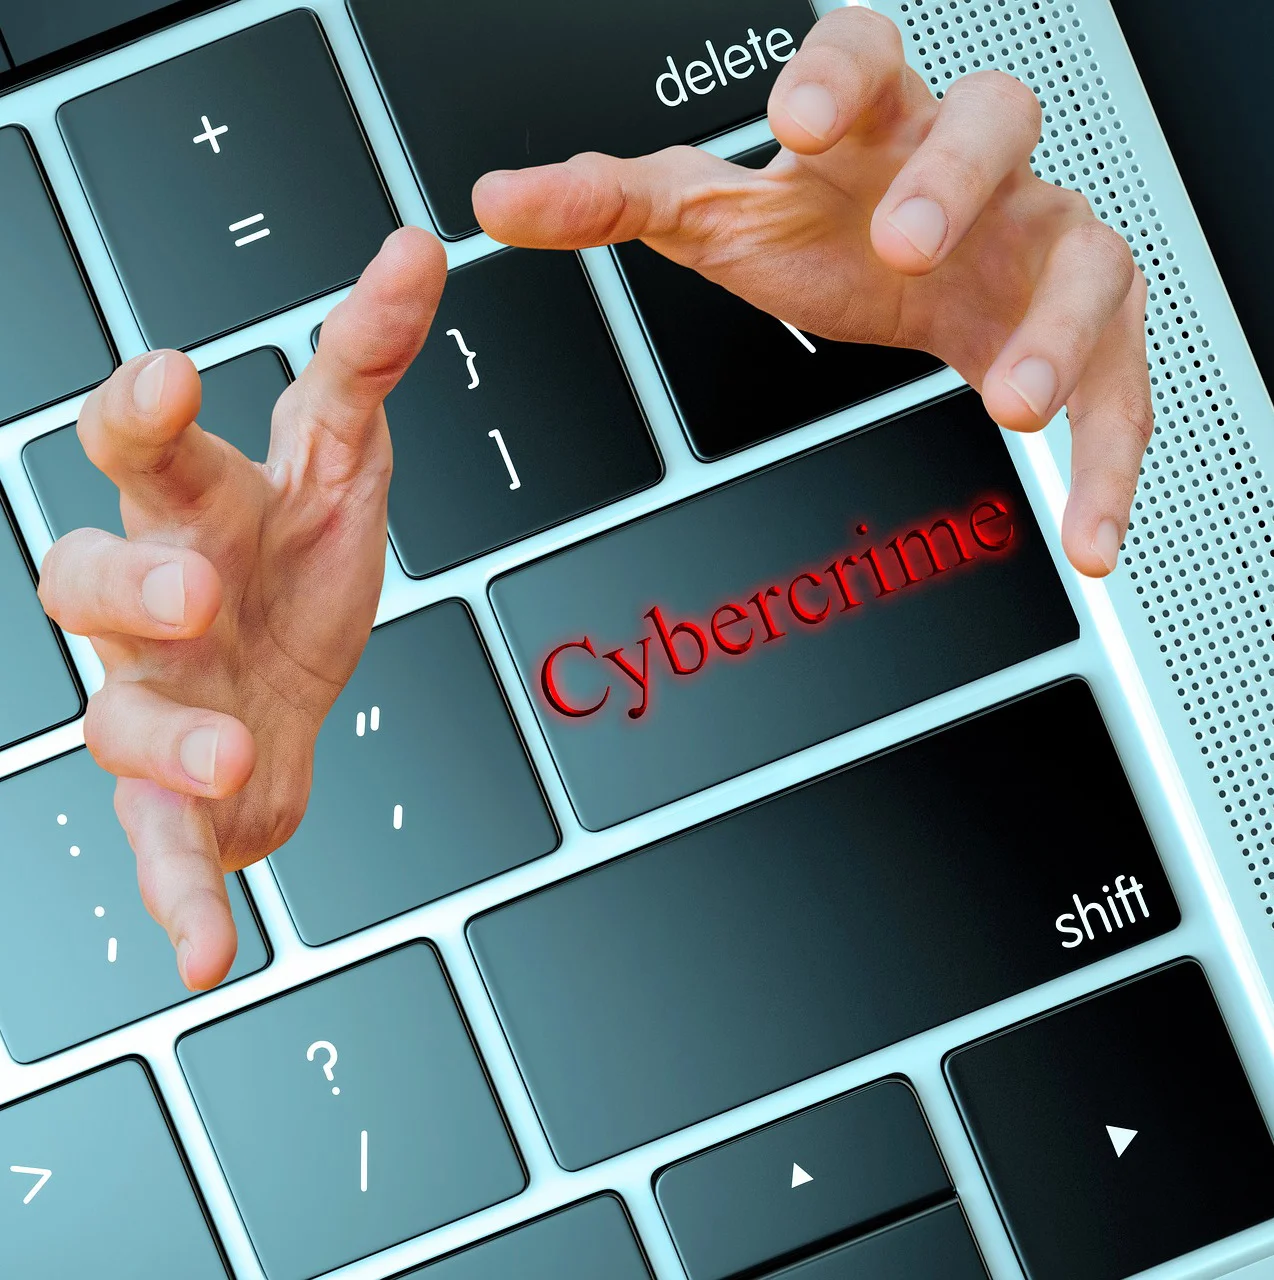 7 acciones de ciberseguridad para protegerse de la delincuencia tecnológica